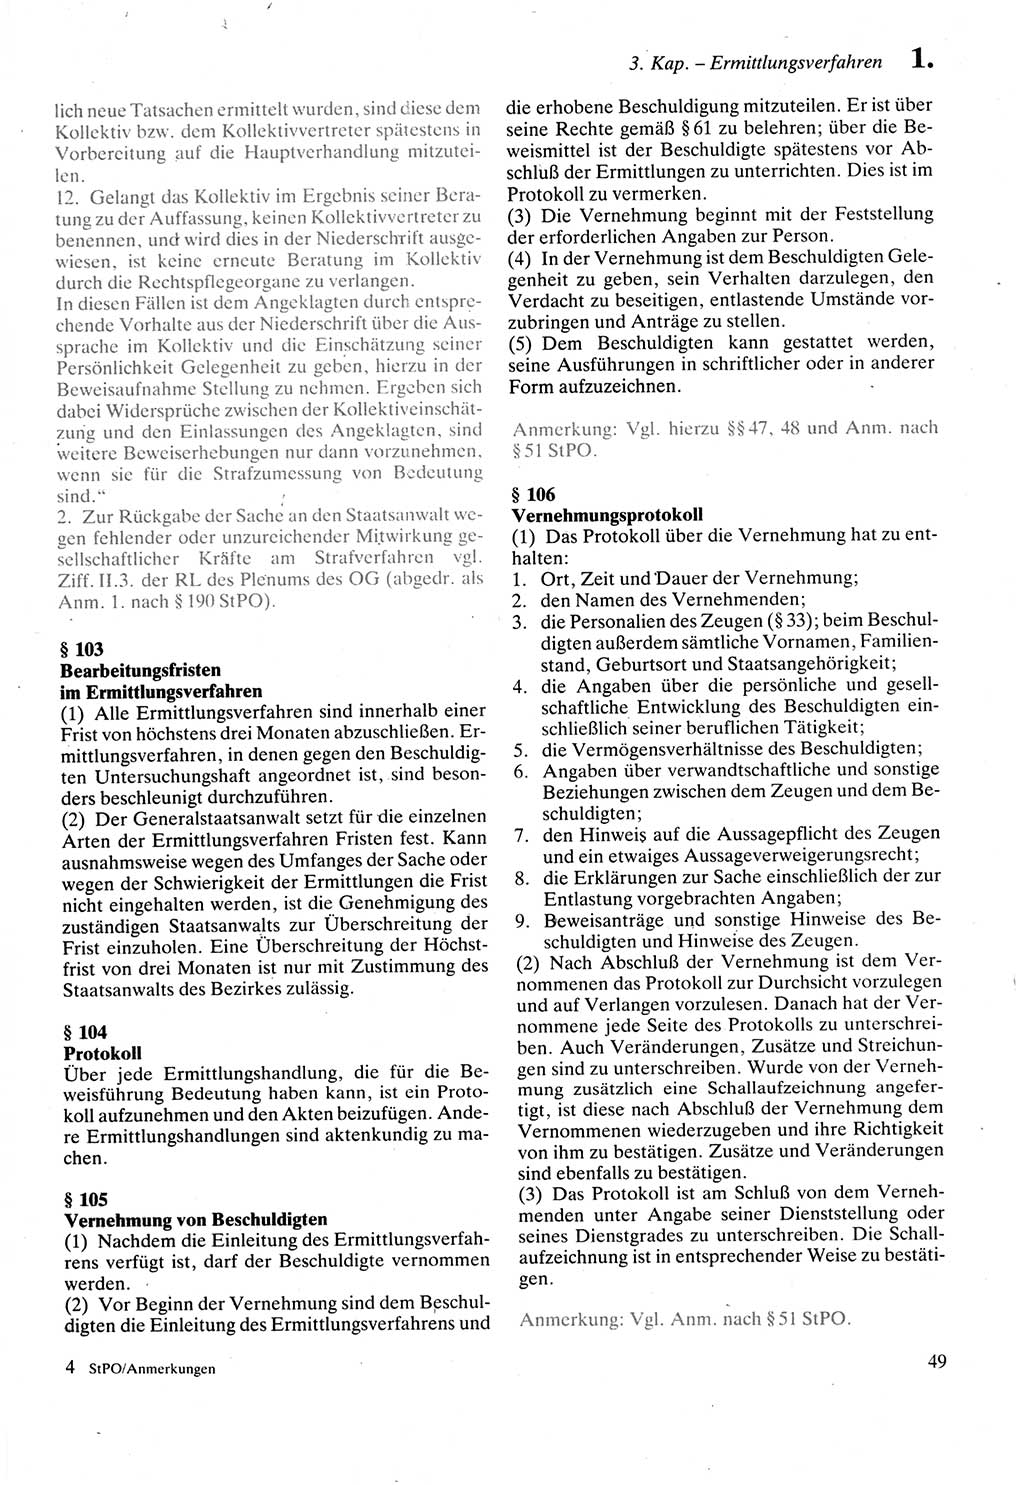 Strafprozeßordnung (StPO) der Deutschen Demokratischen Republik (DDR) sowie angrenzende Gesetze und Bestimmungen 1987, Seite 49 (StPO DDR Ges. Best. 1987, S. 49)